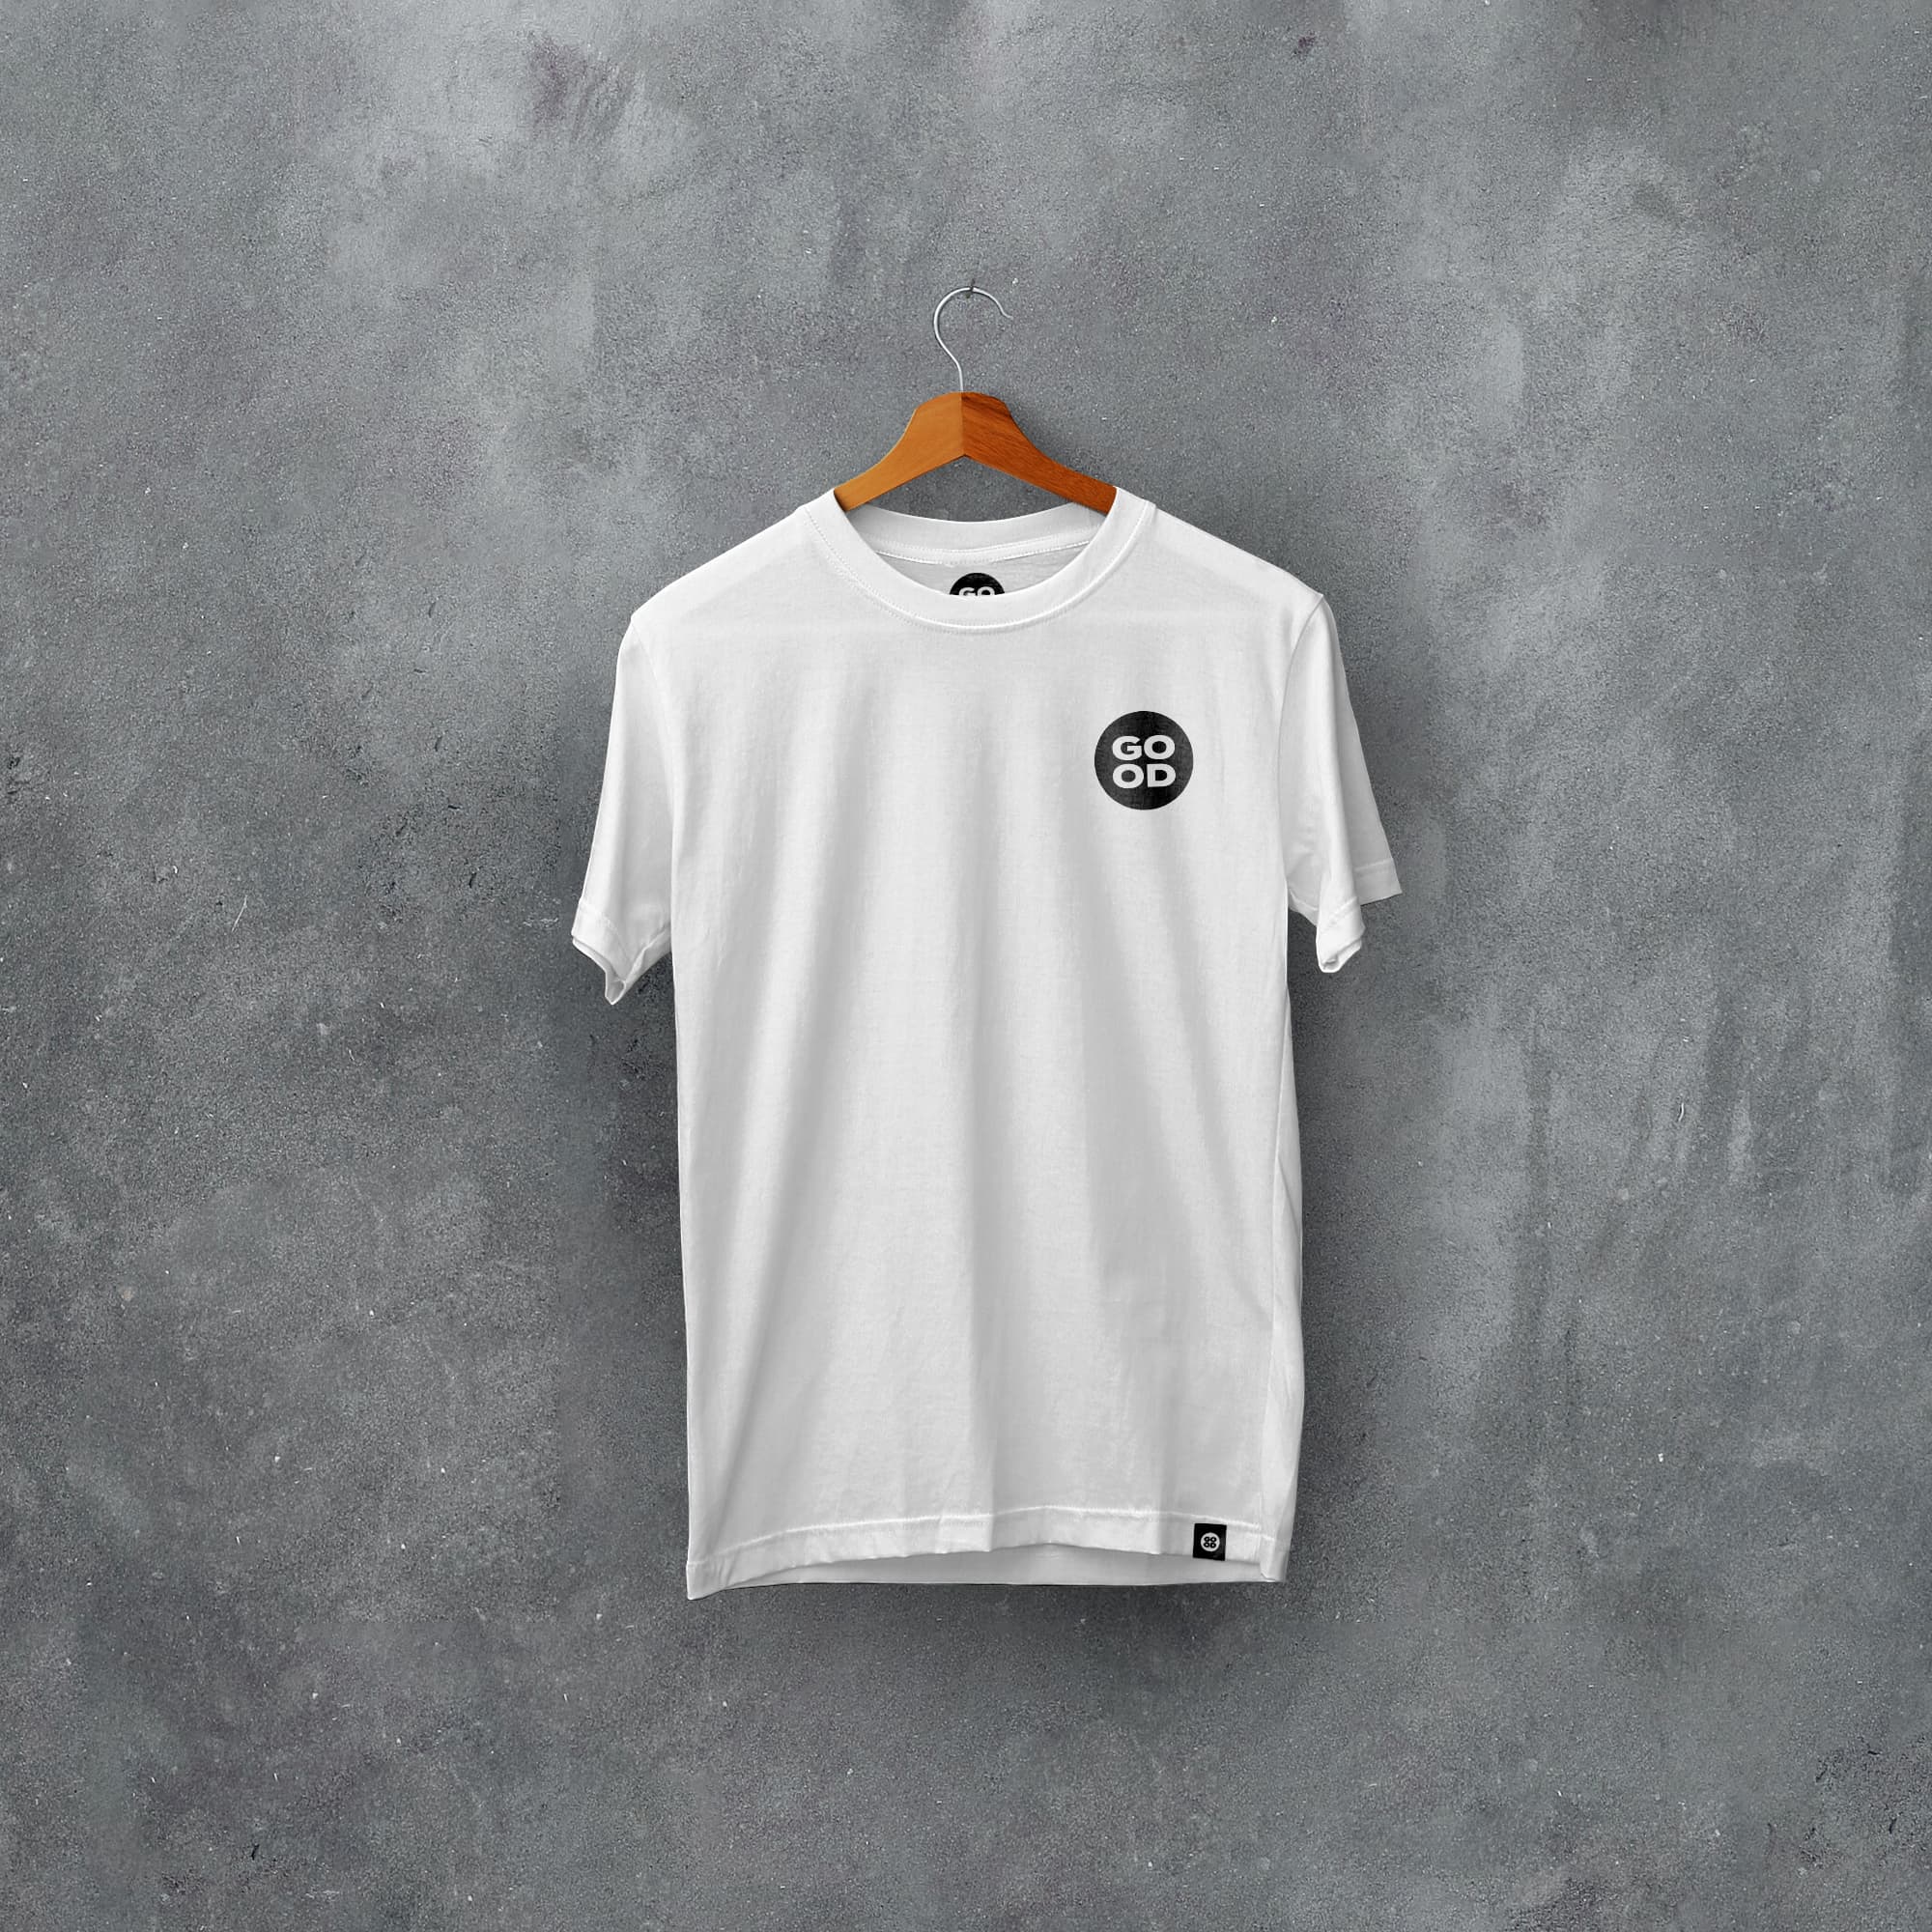 Halifax Classic Kits Football T-Shirt